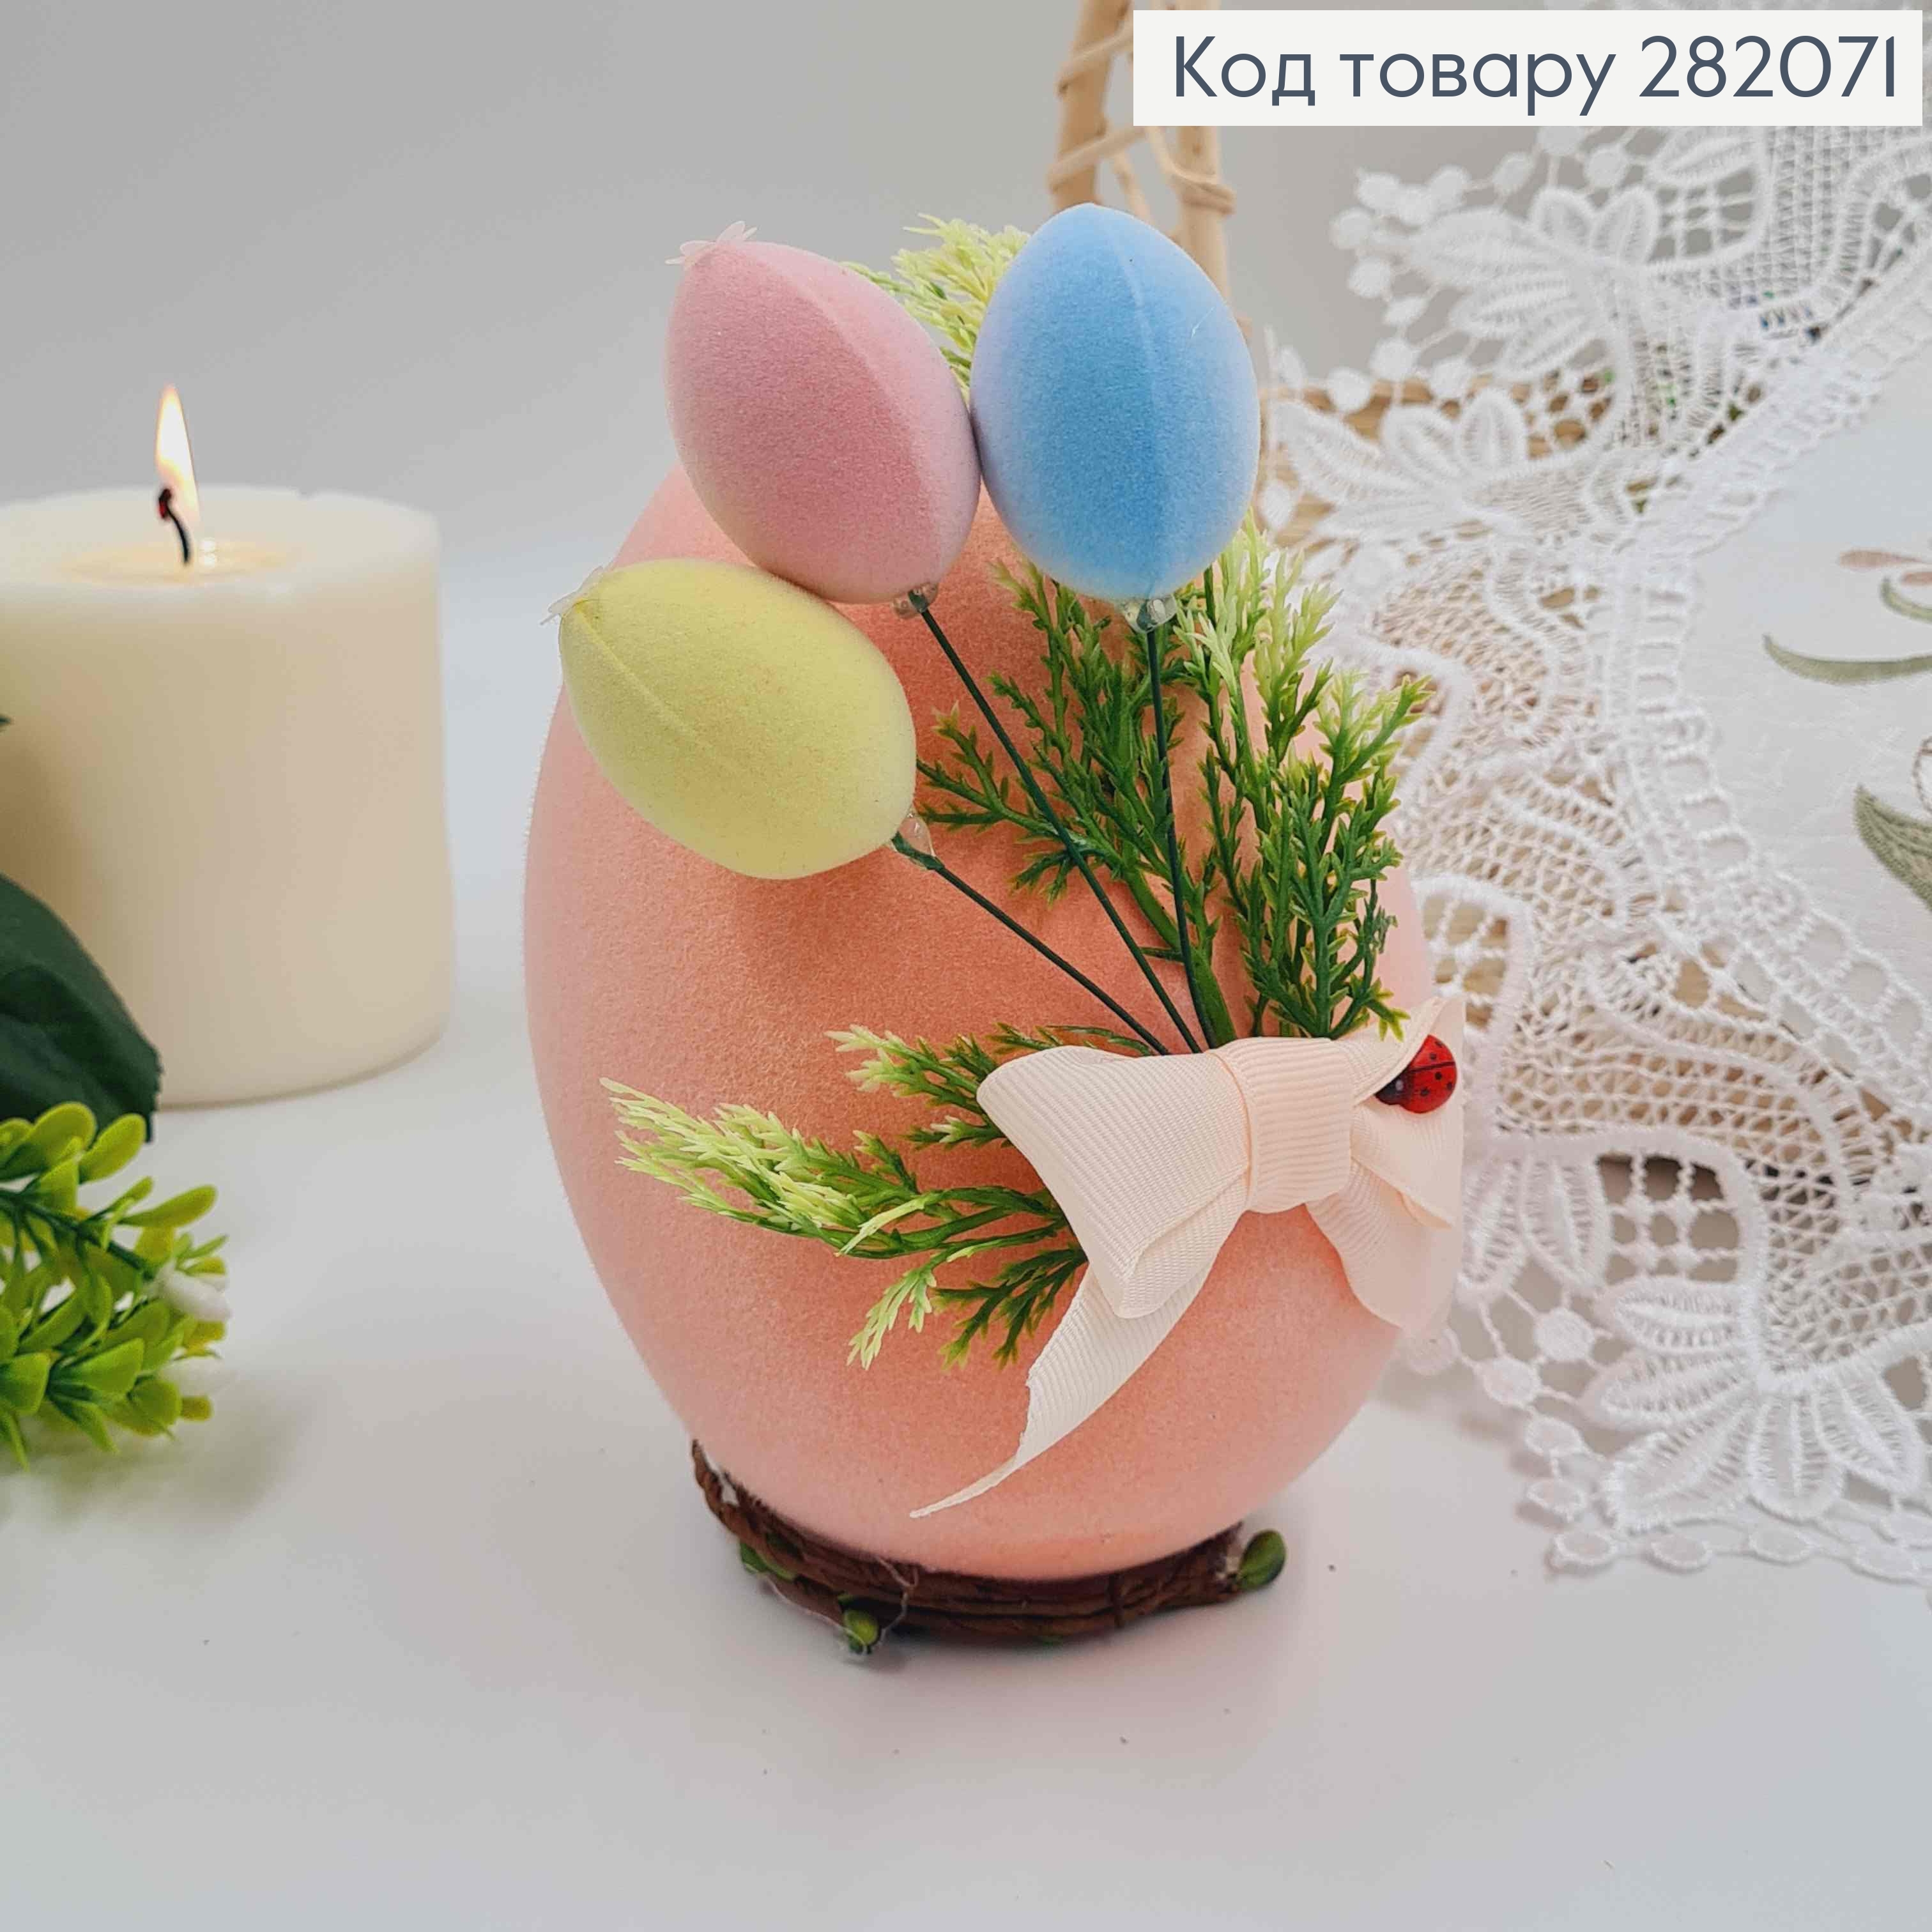 Пасхальна композиція, страусине яйце ПЕРСИКОВОГО кольору, 15*10см 282071 фото 2